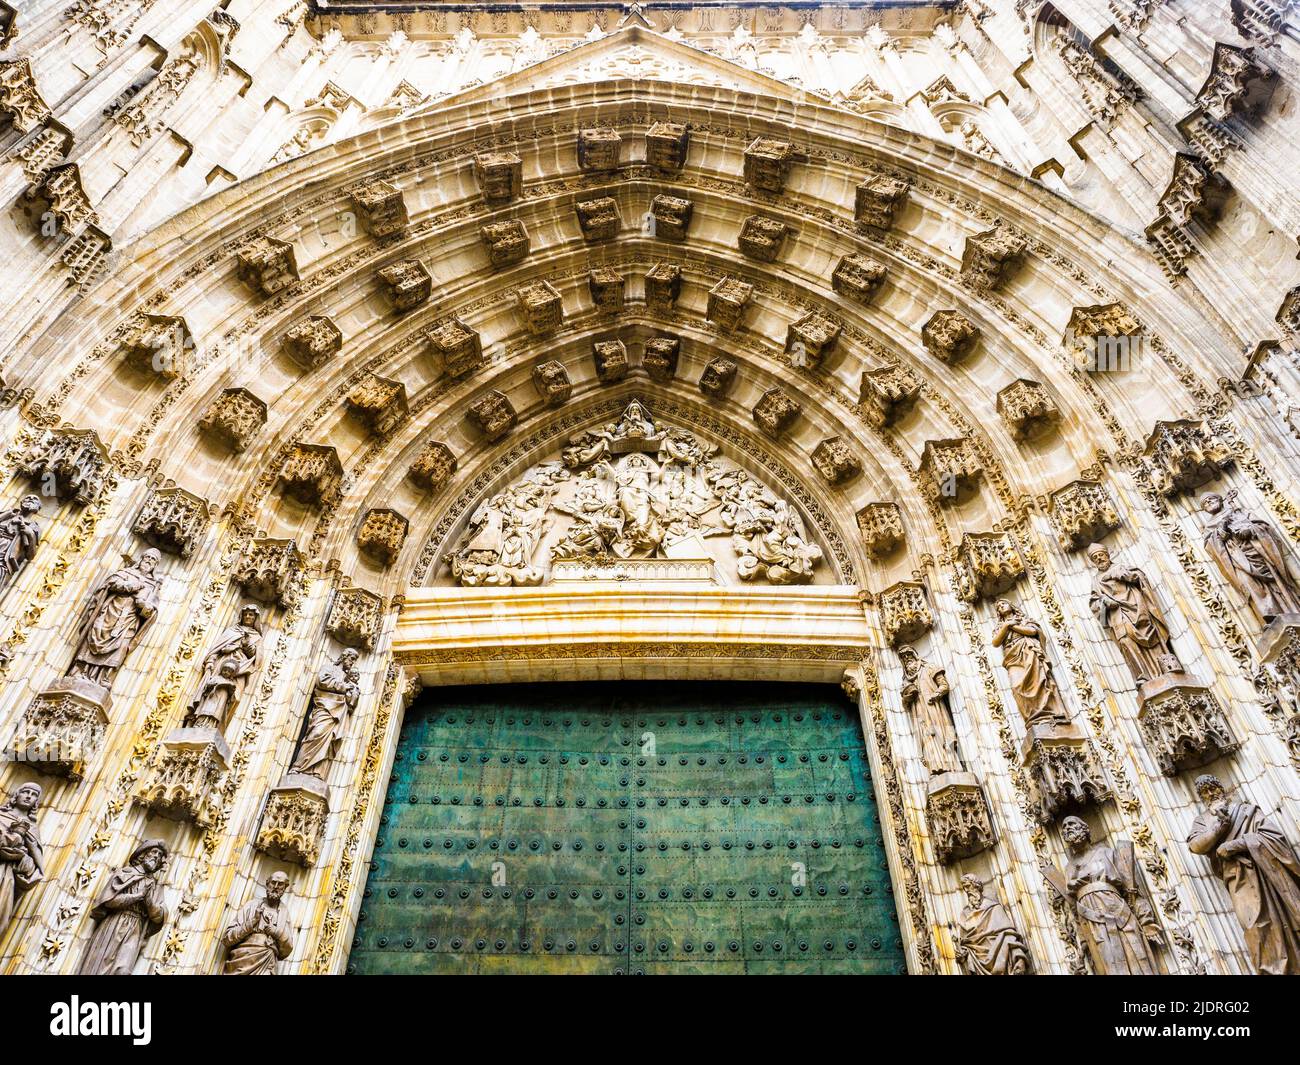 Puerta de la Asunción (porte de l'Assomption) - Cathédrale de Séville, Espagne Banque D'Images